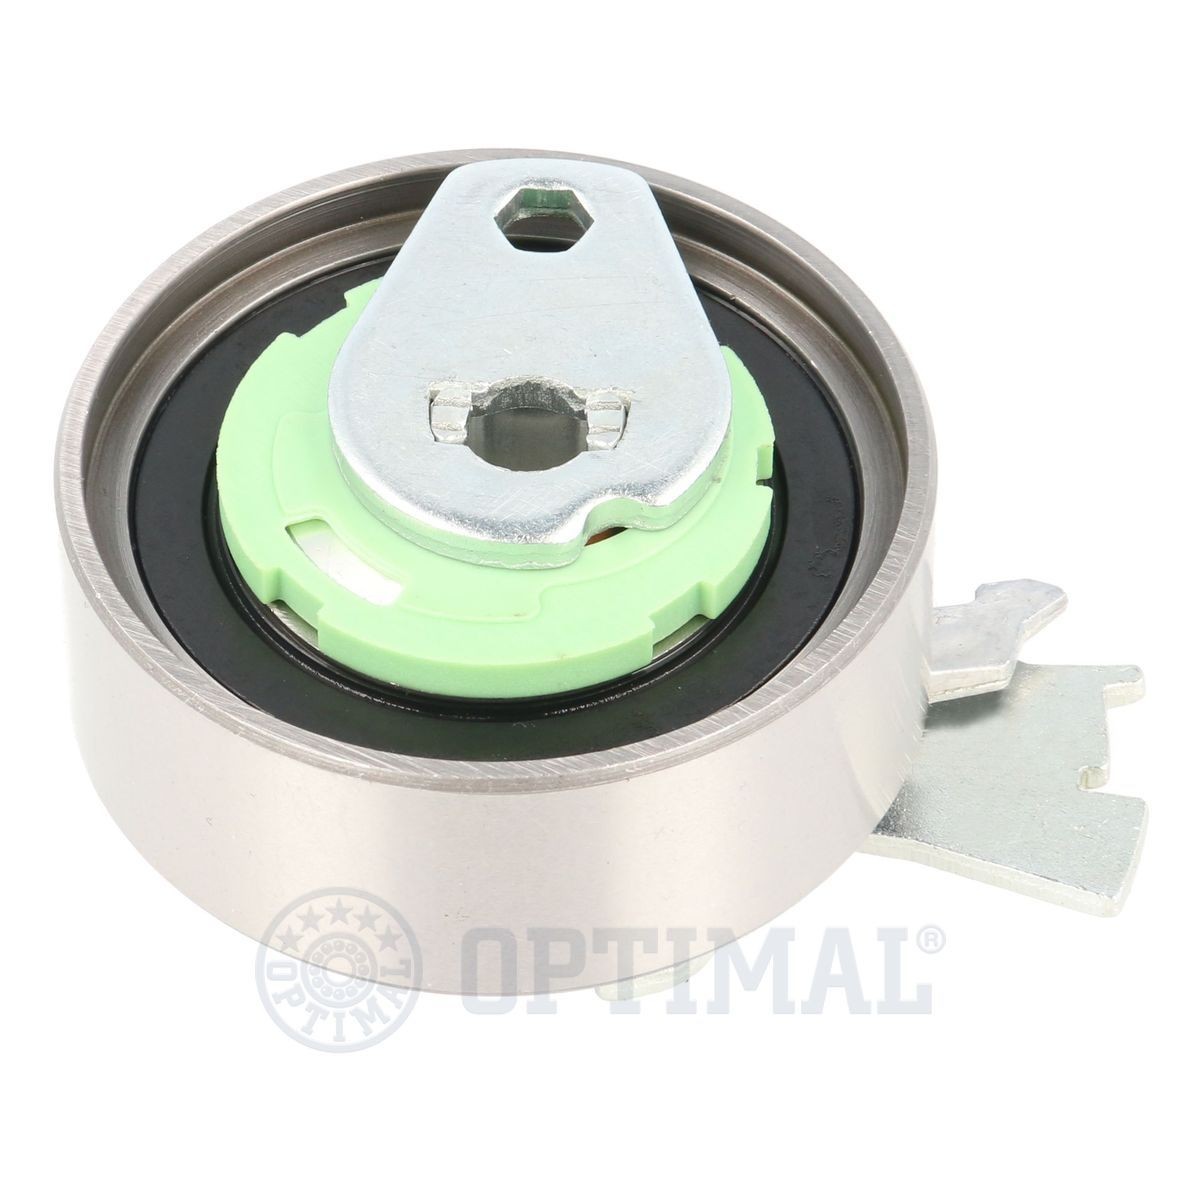 OPTIMAL 0-N102 Timing belt tensioner pulley